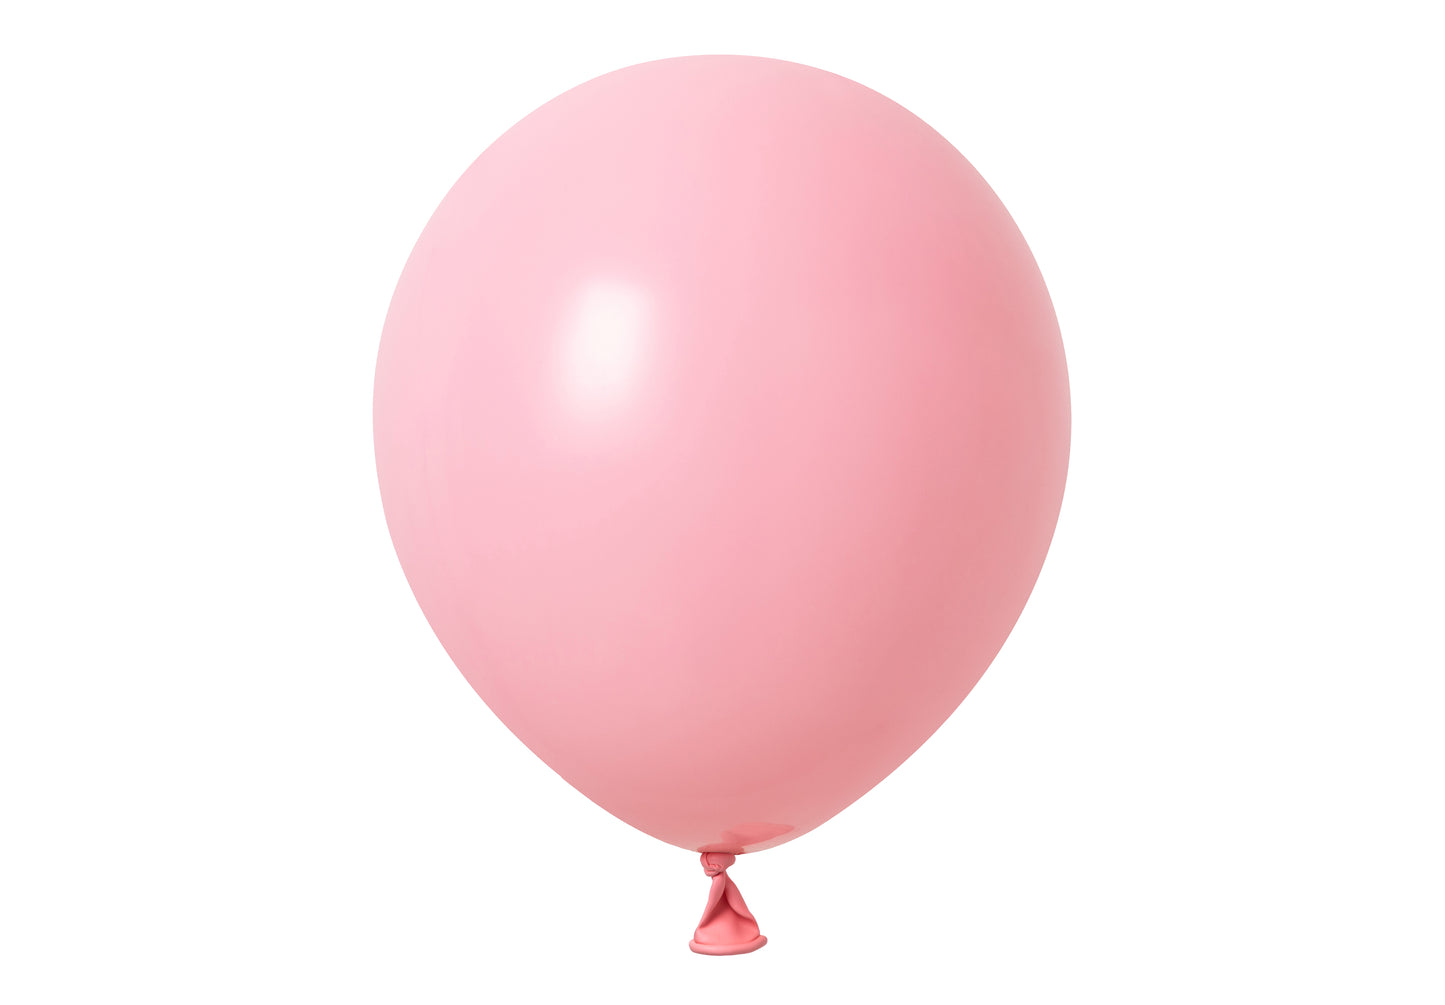 Winntex Premium 12" Baby Pink Latex Balloon 100ct